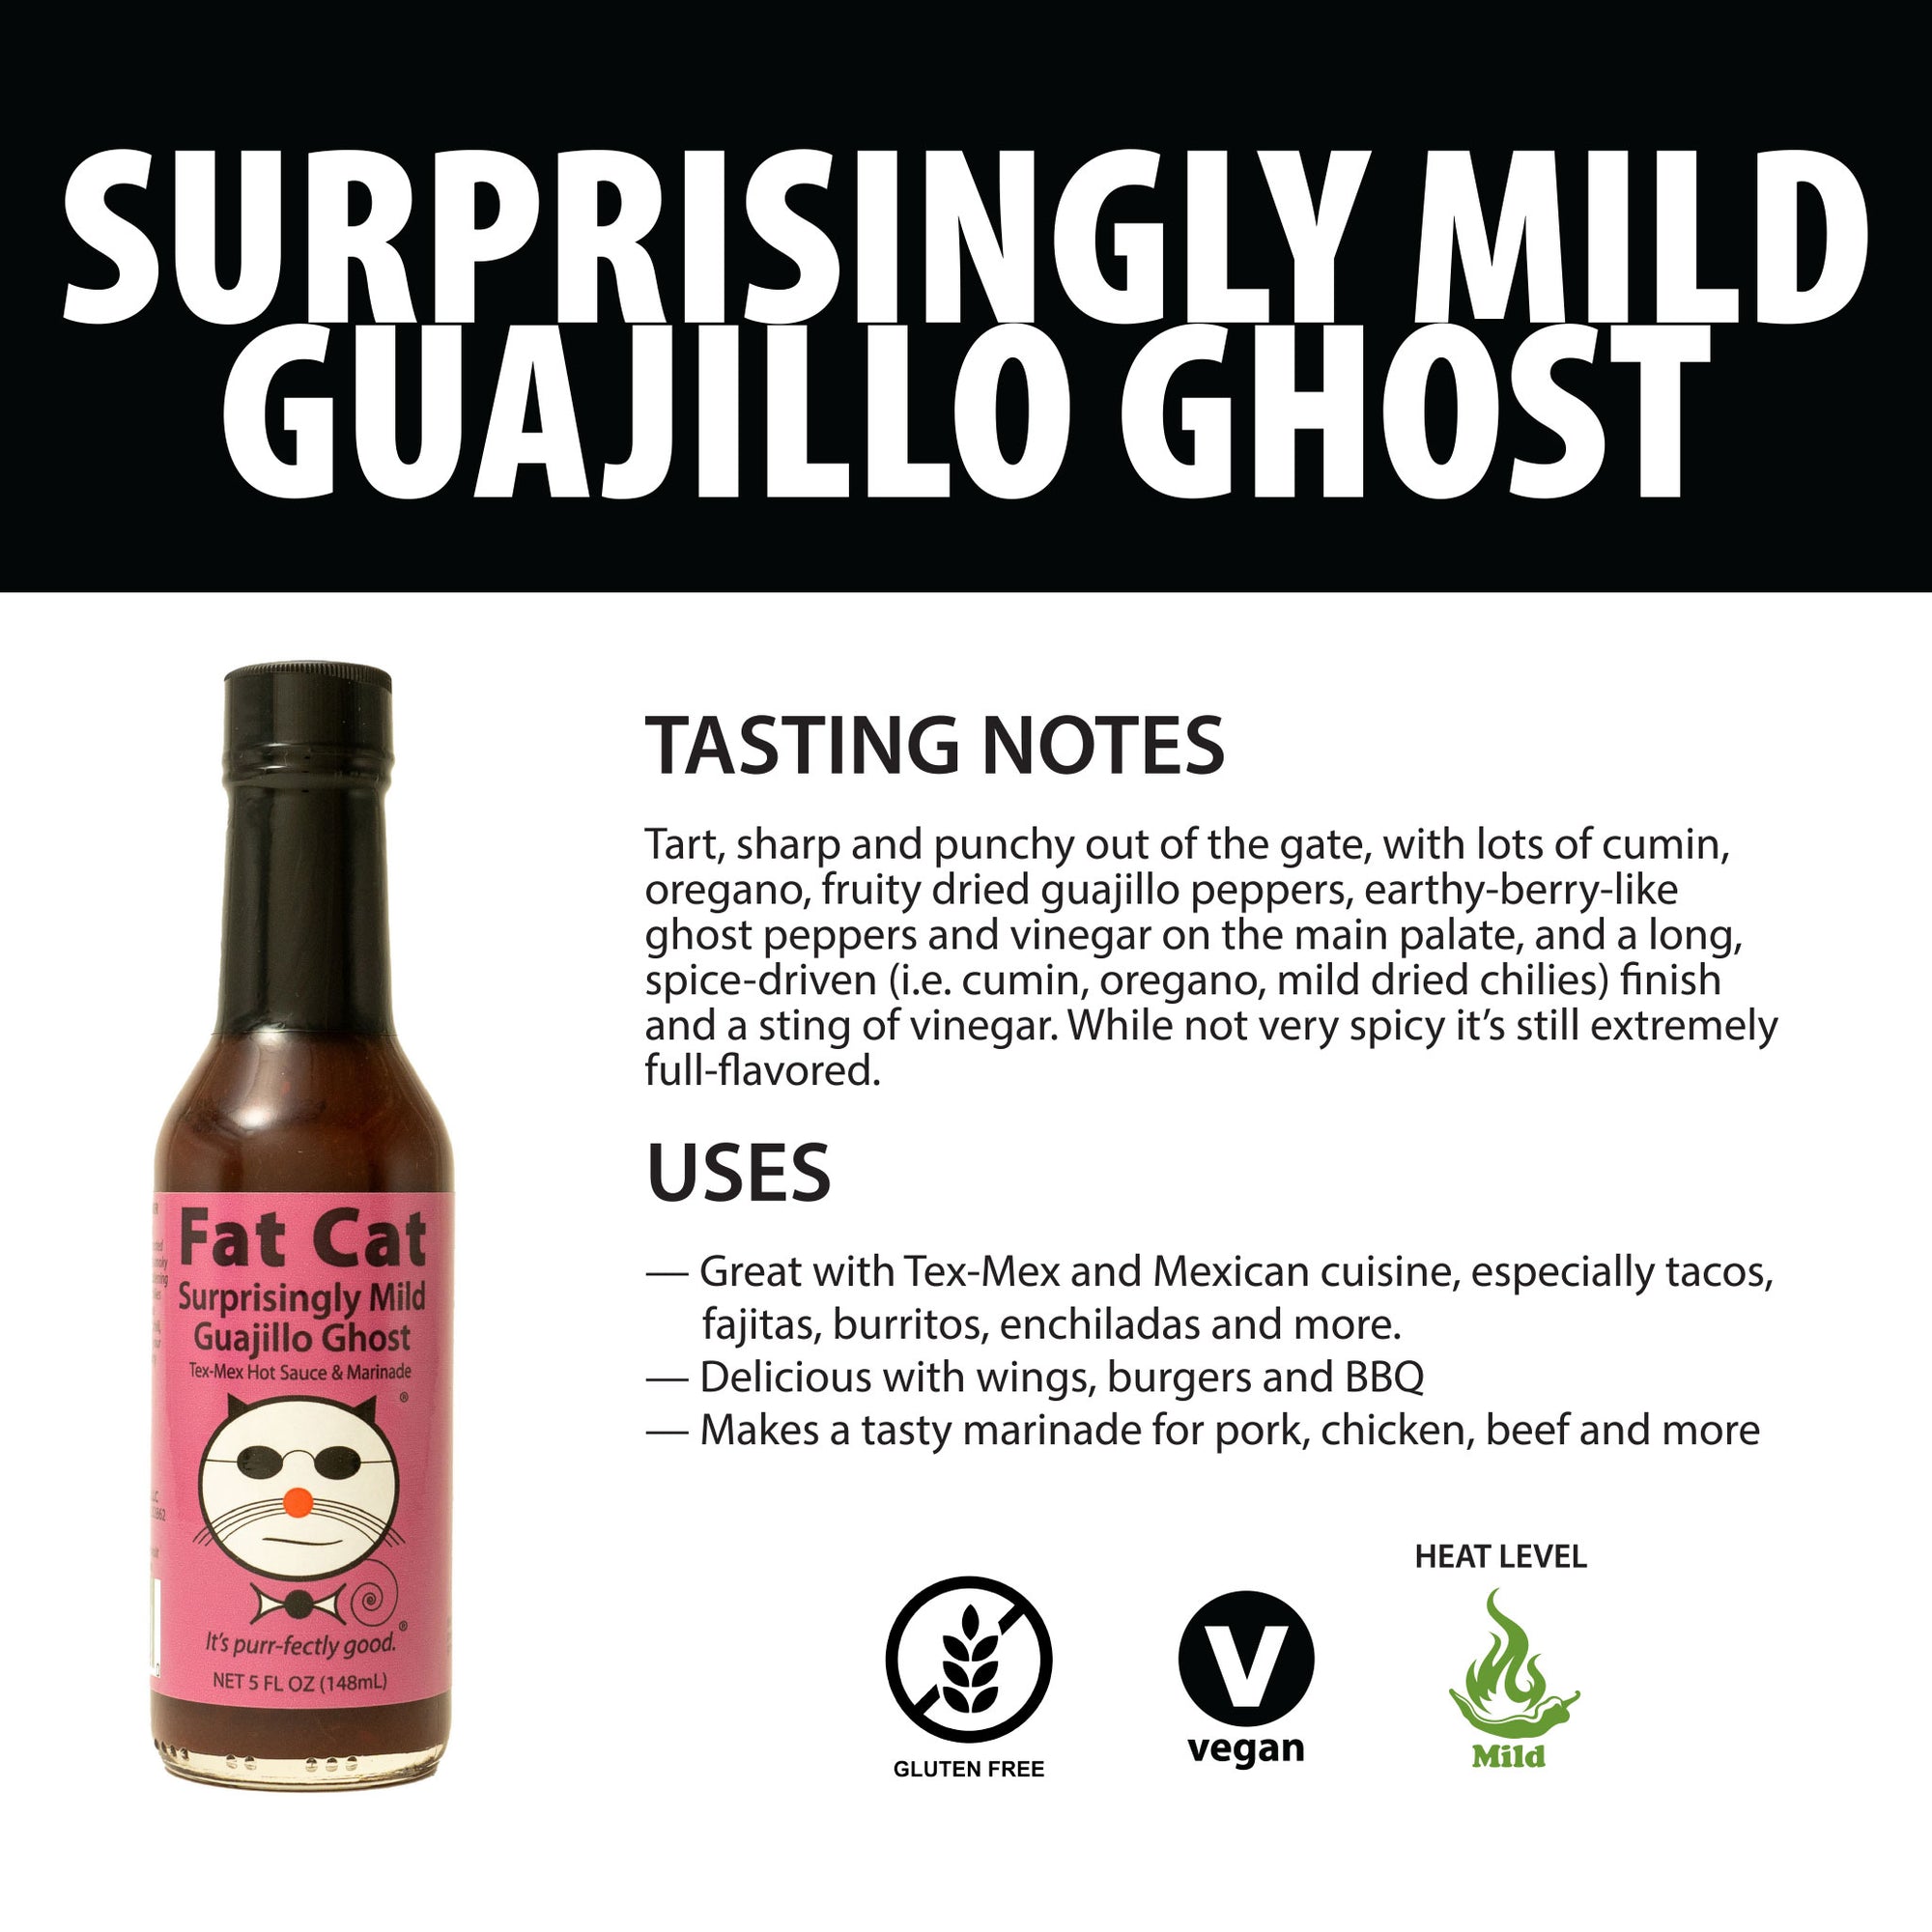 Fat-Cat-Gourmet-Surprisingly-Mild-Guajillo-Ghost-Tasting-Notes